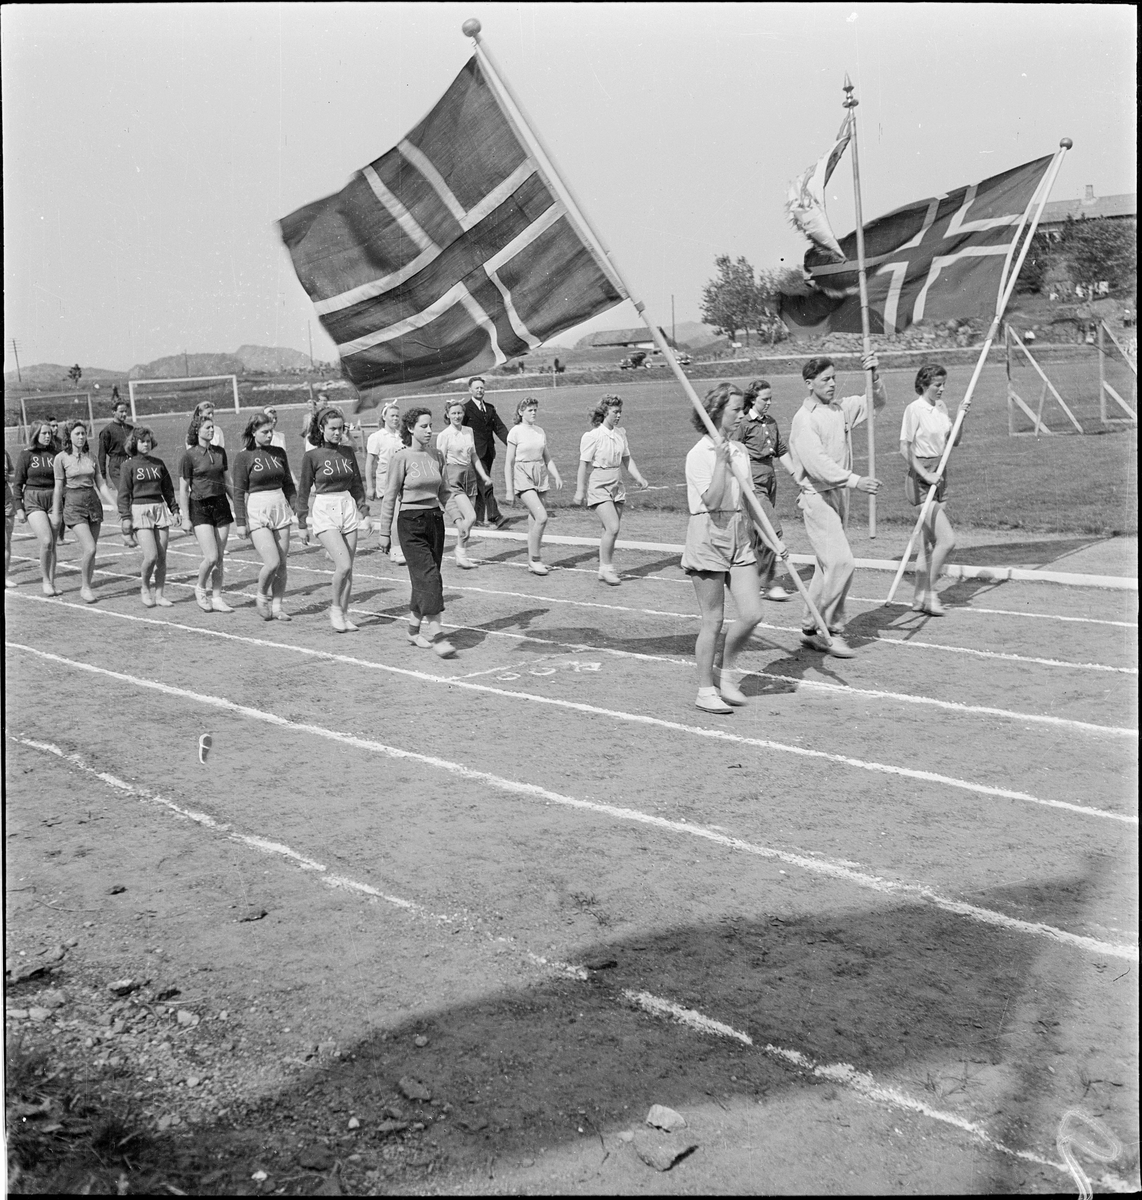 Idrettsutøvere på vei inn på idrettsmarka i Egersund. Det er utøvere fra Stavanger IK, Skjalg IL og Egersund IK.